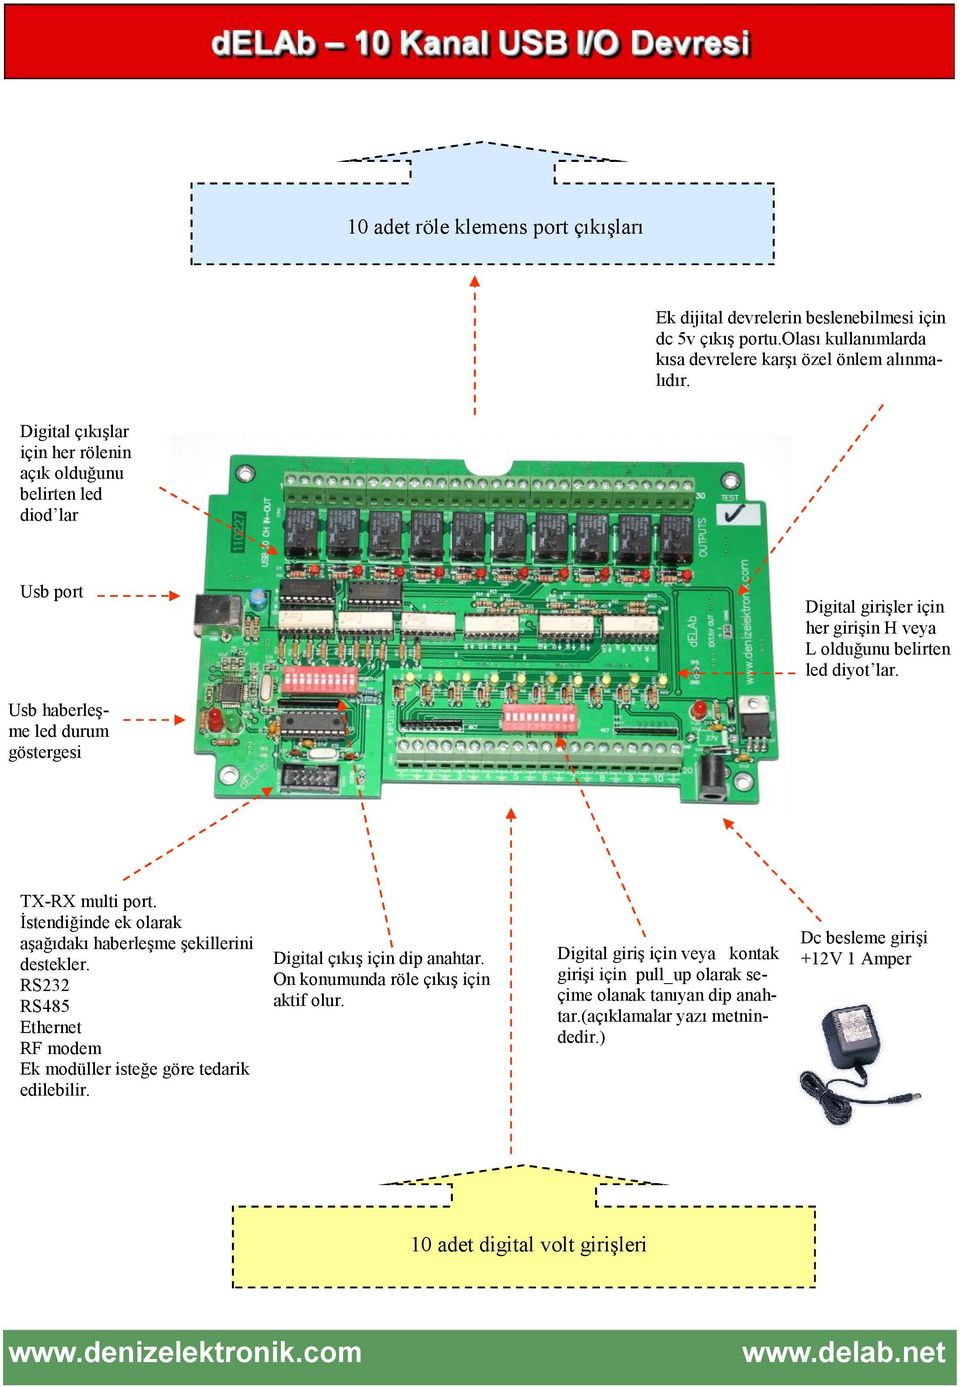 Usb haberleşme led durum göstergesi TX-RX multi port. İstendiğinde ek olarak aşağıdakı haberleşme şekillerini destekler. RS232 RS485 Ethernet RF modem Ek modüller isteğe göre tedarik edilebilir.